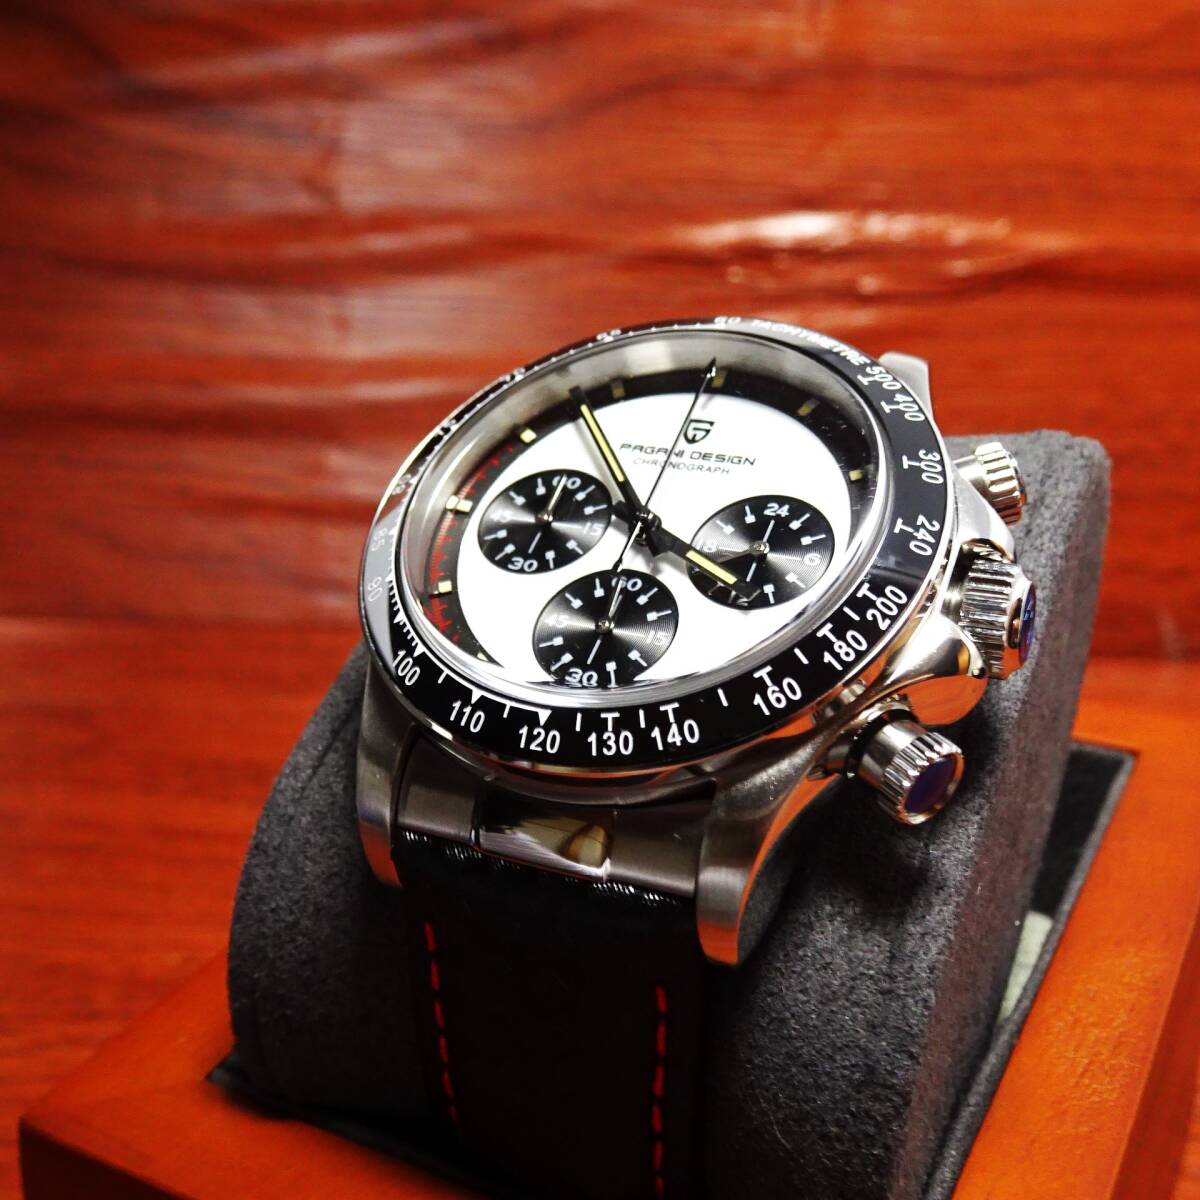 送料無料・新品・パガーニデザイン・メンズ・セイコー製VK63クロノグラフクオーツ式腕時計・オマージュ・カーボン柄本革モデル・PD-1676・w